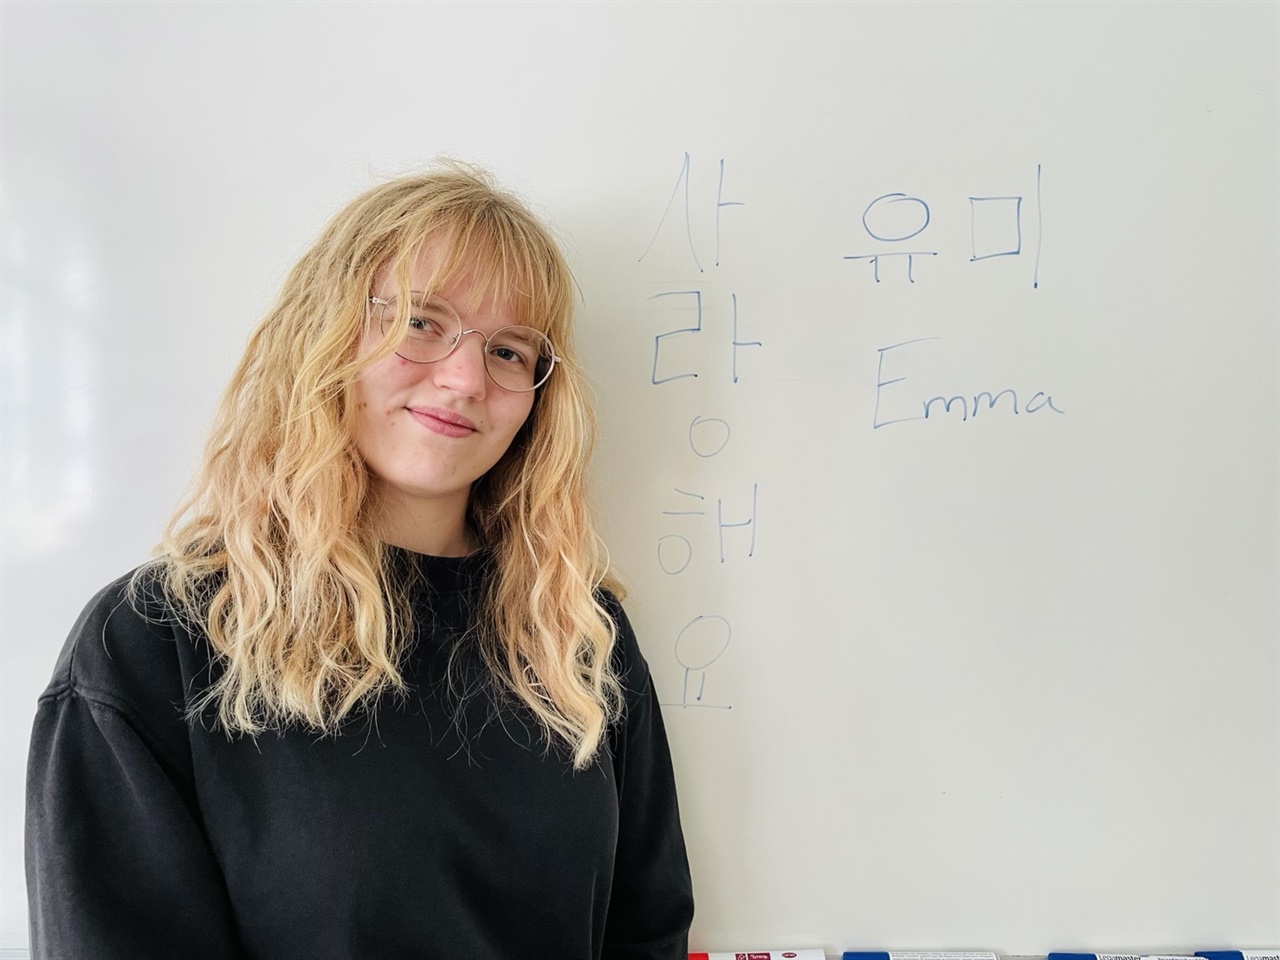 엠마가 가장 좋아하는 한국 단어와 한국 이름을 써 두었다.